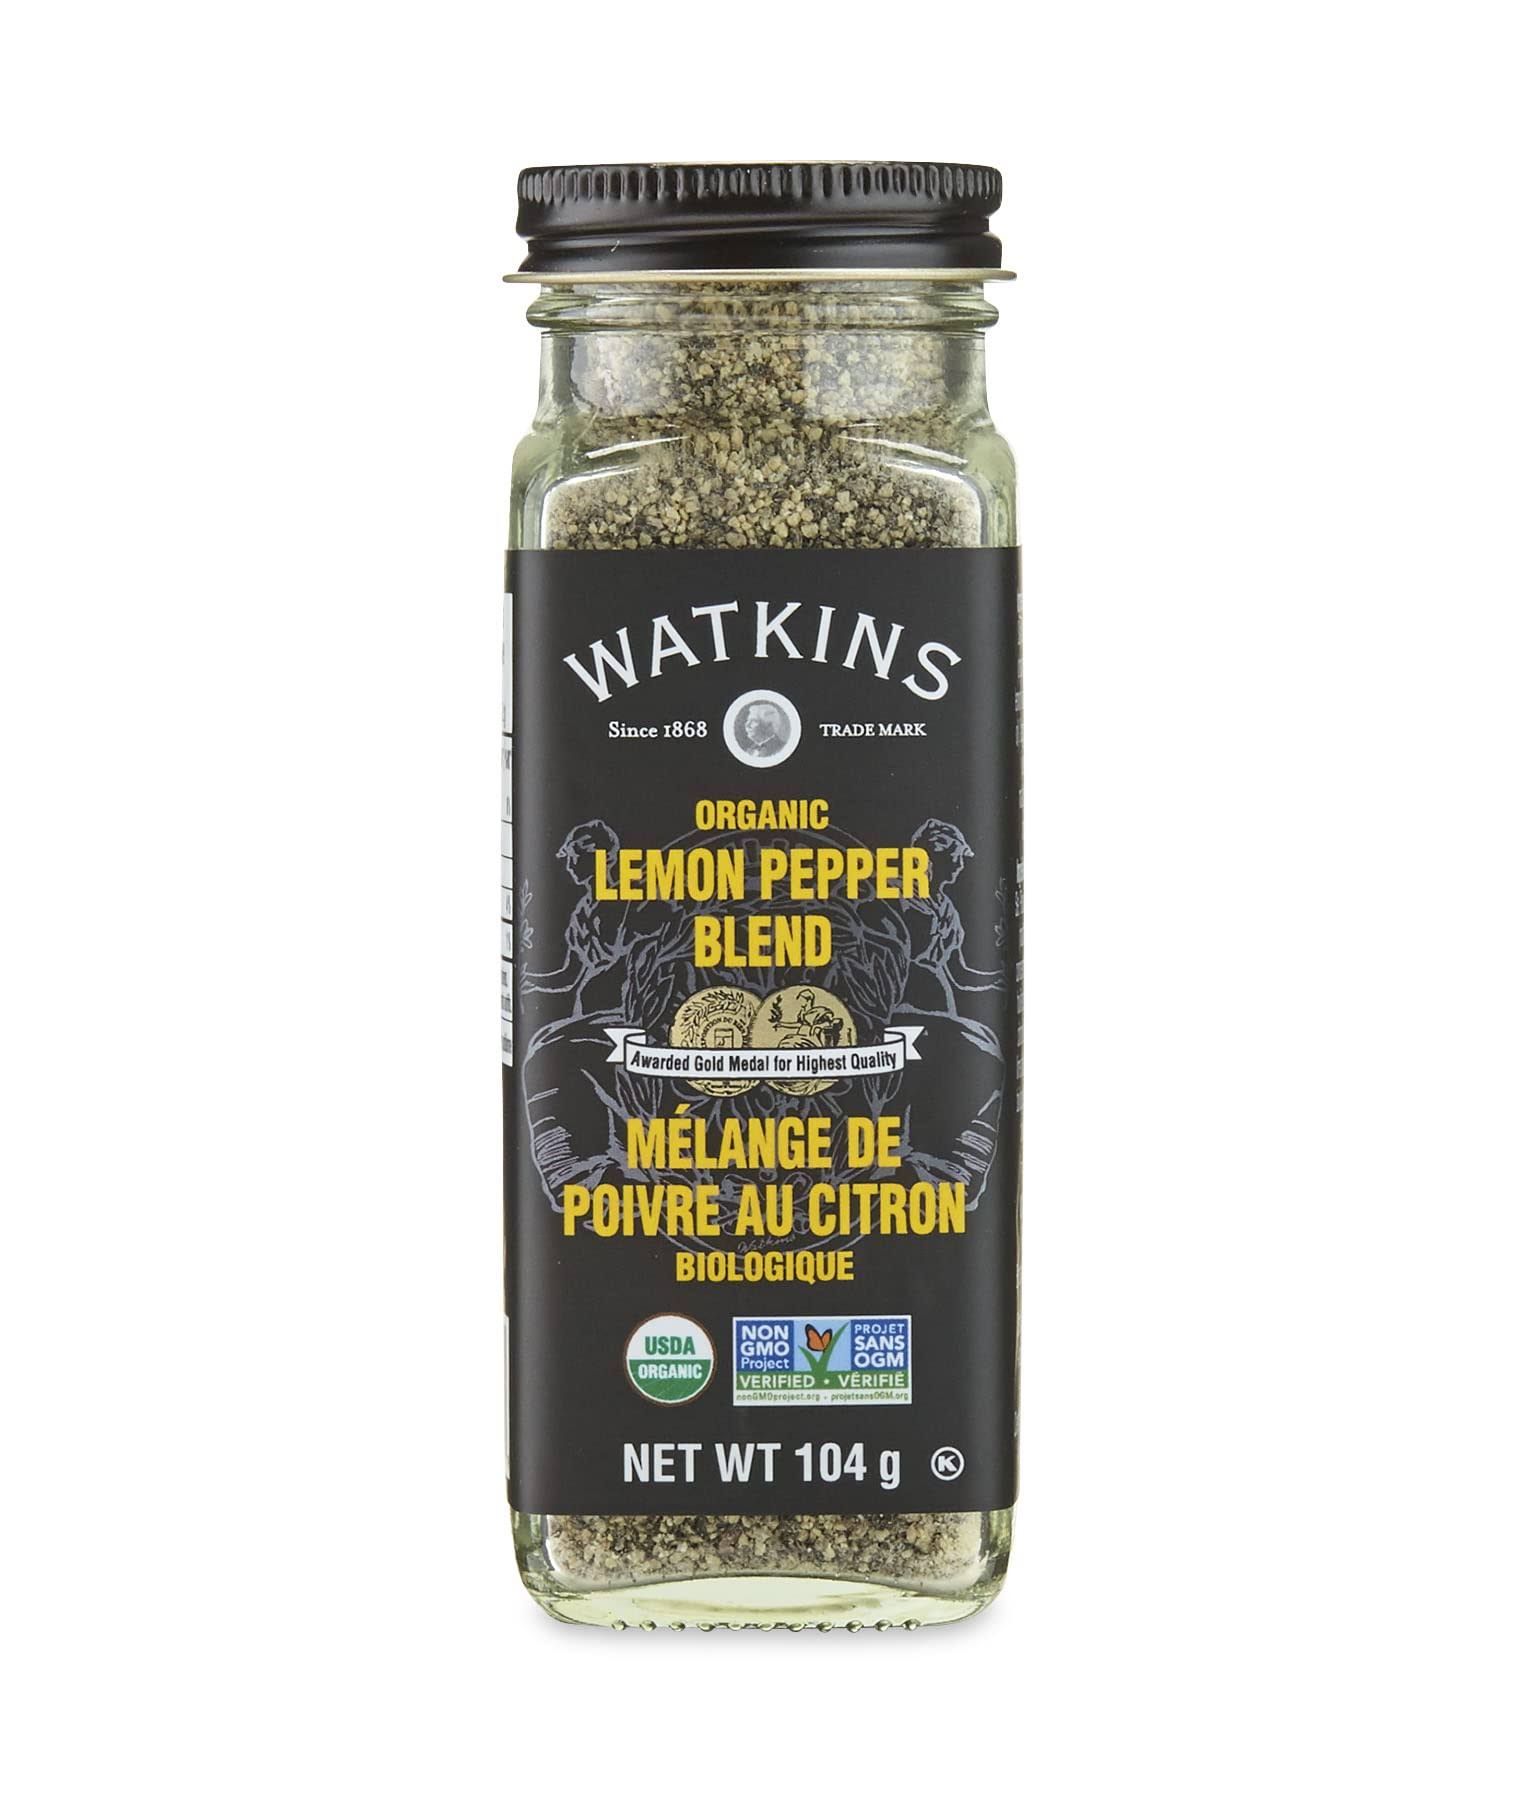 Watkins Organic Lemon Pepper Blend 104g